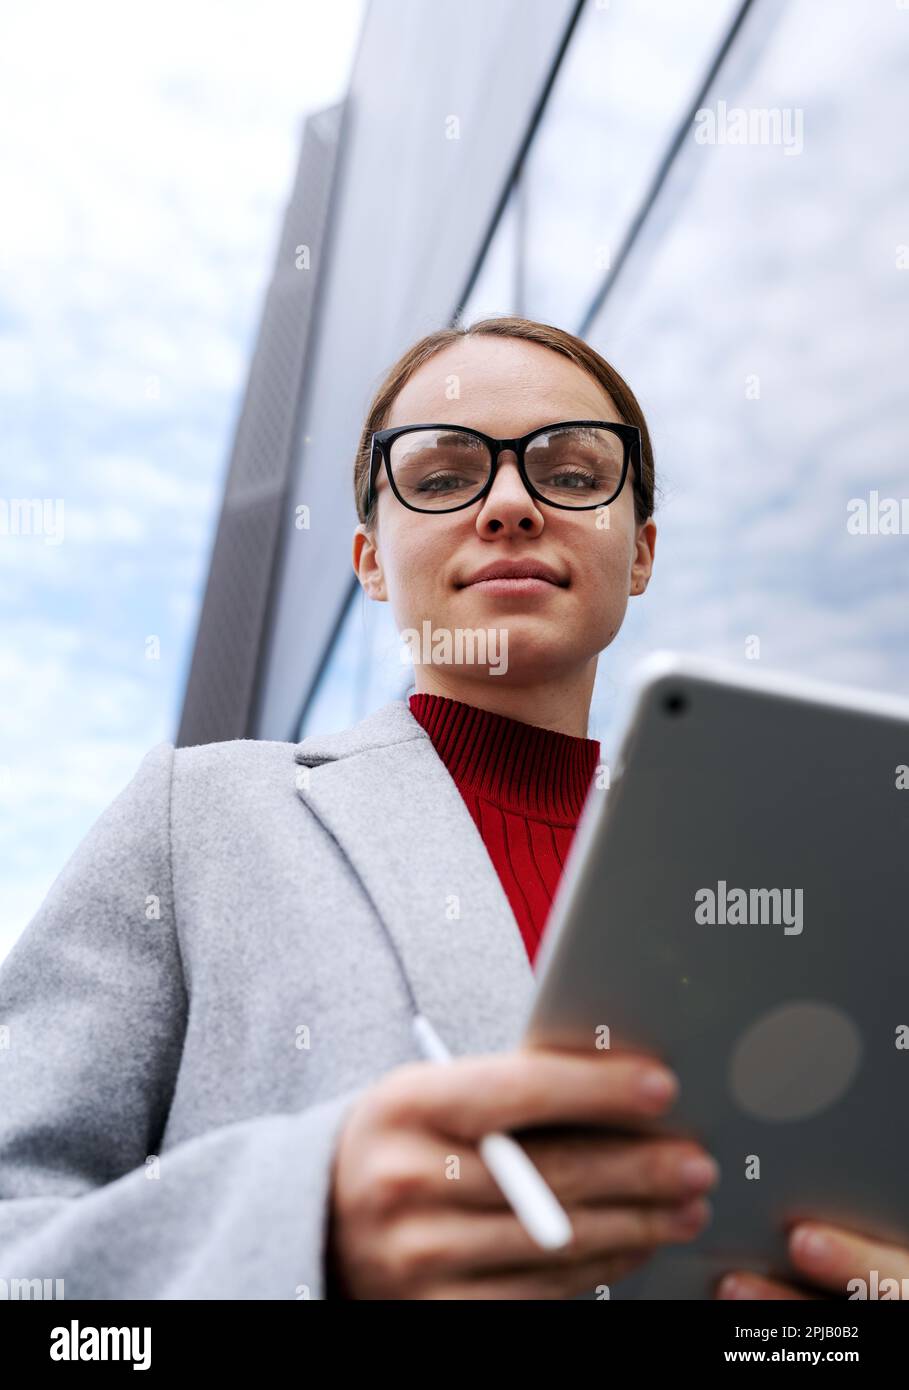 Female entrepreneur wearing glasses holding digital tablet in hands. Stock Photo